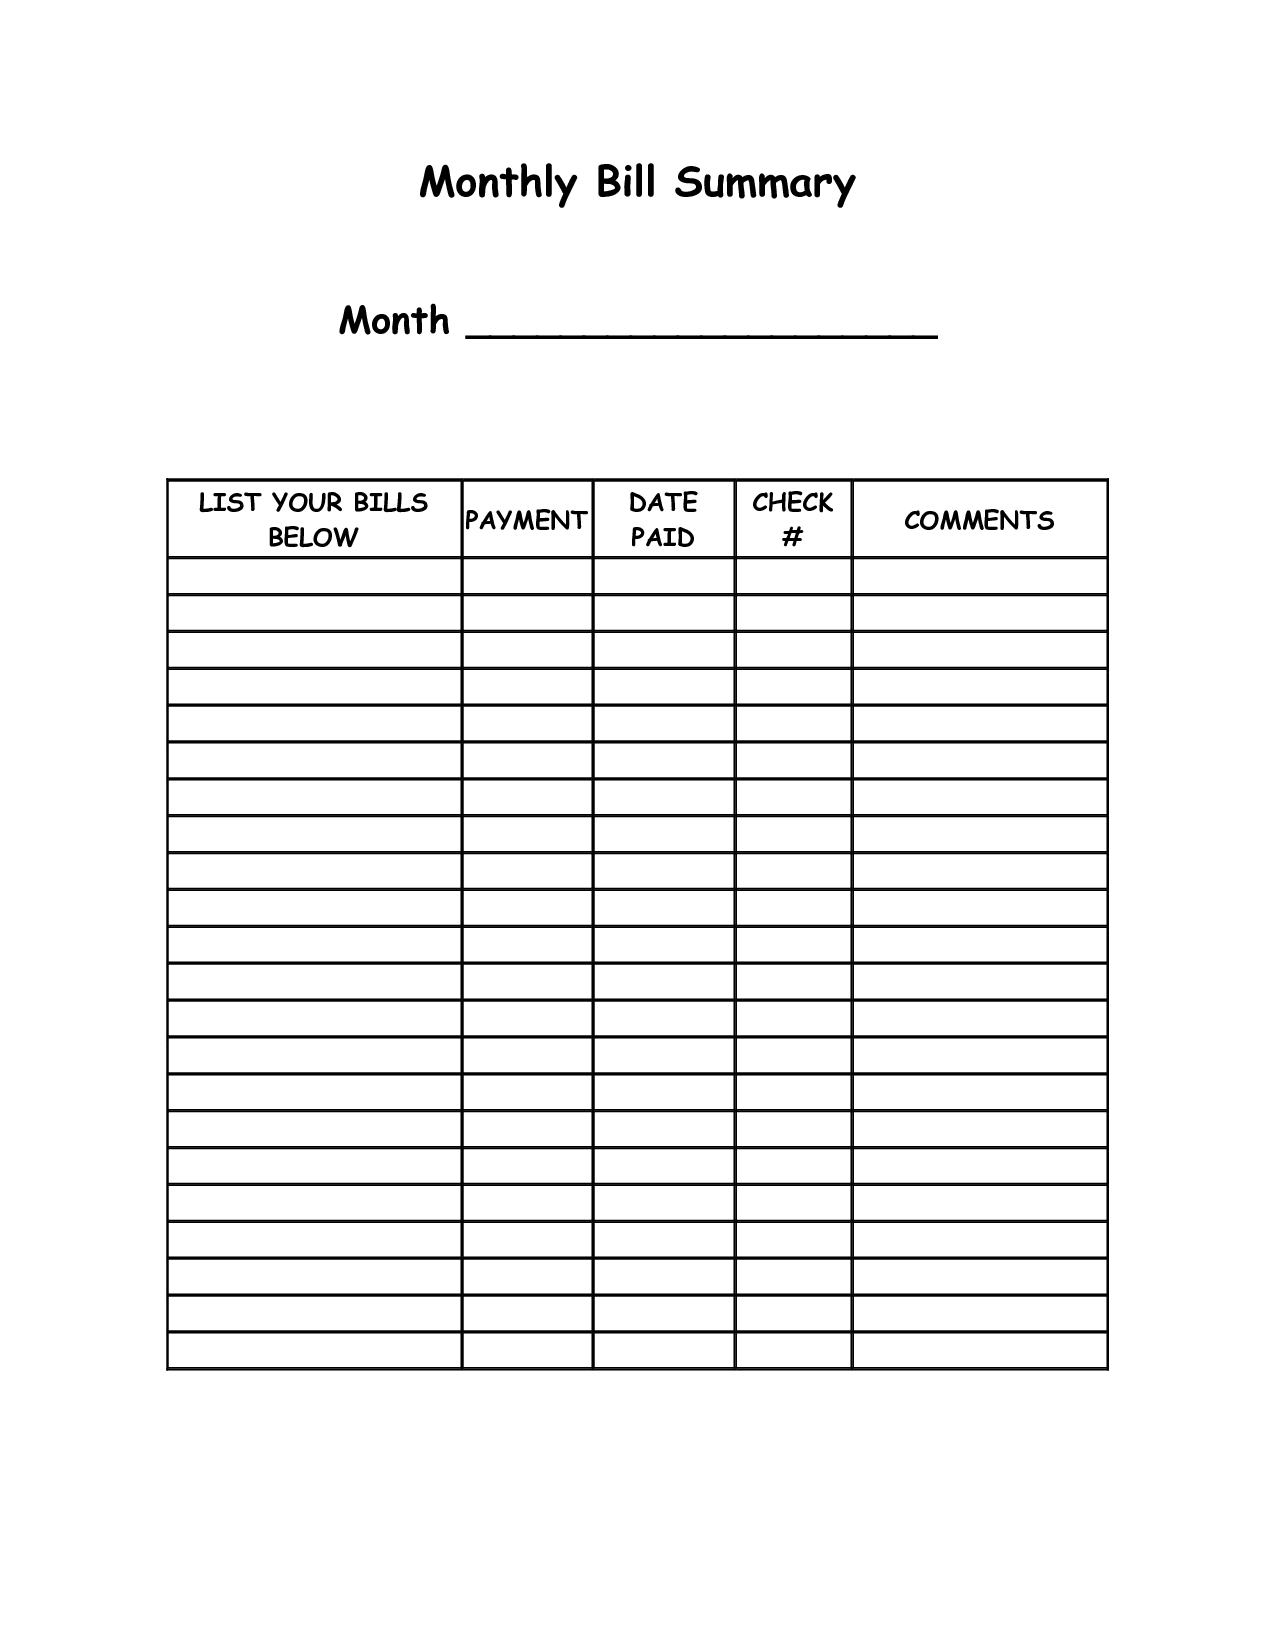 Monthly Bill Summary Doc | Organization | Bill Payment Organization in Free Printable Monthly Bill Payment